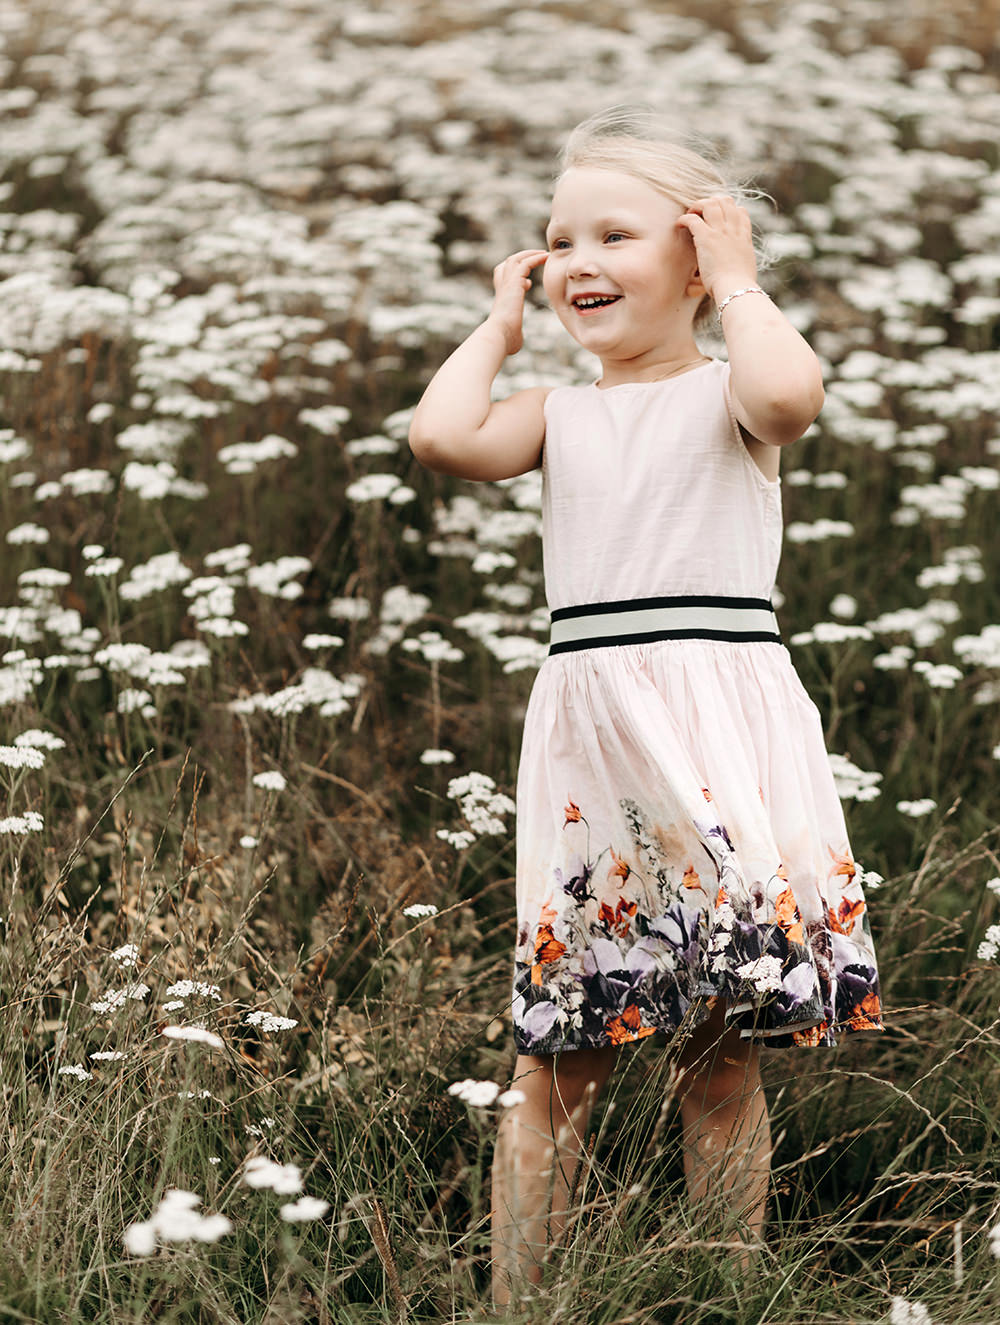 Een klein meisje dat in een veld met madeliefjes staat tijdens een gezinsfotoshoot buiten.